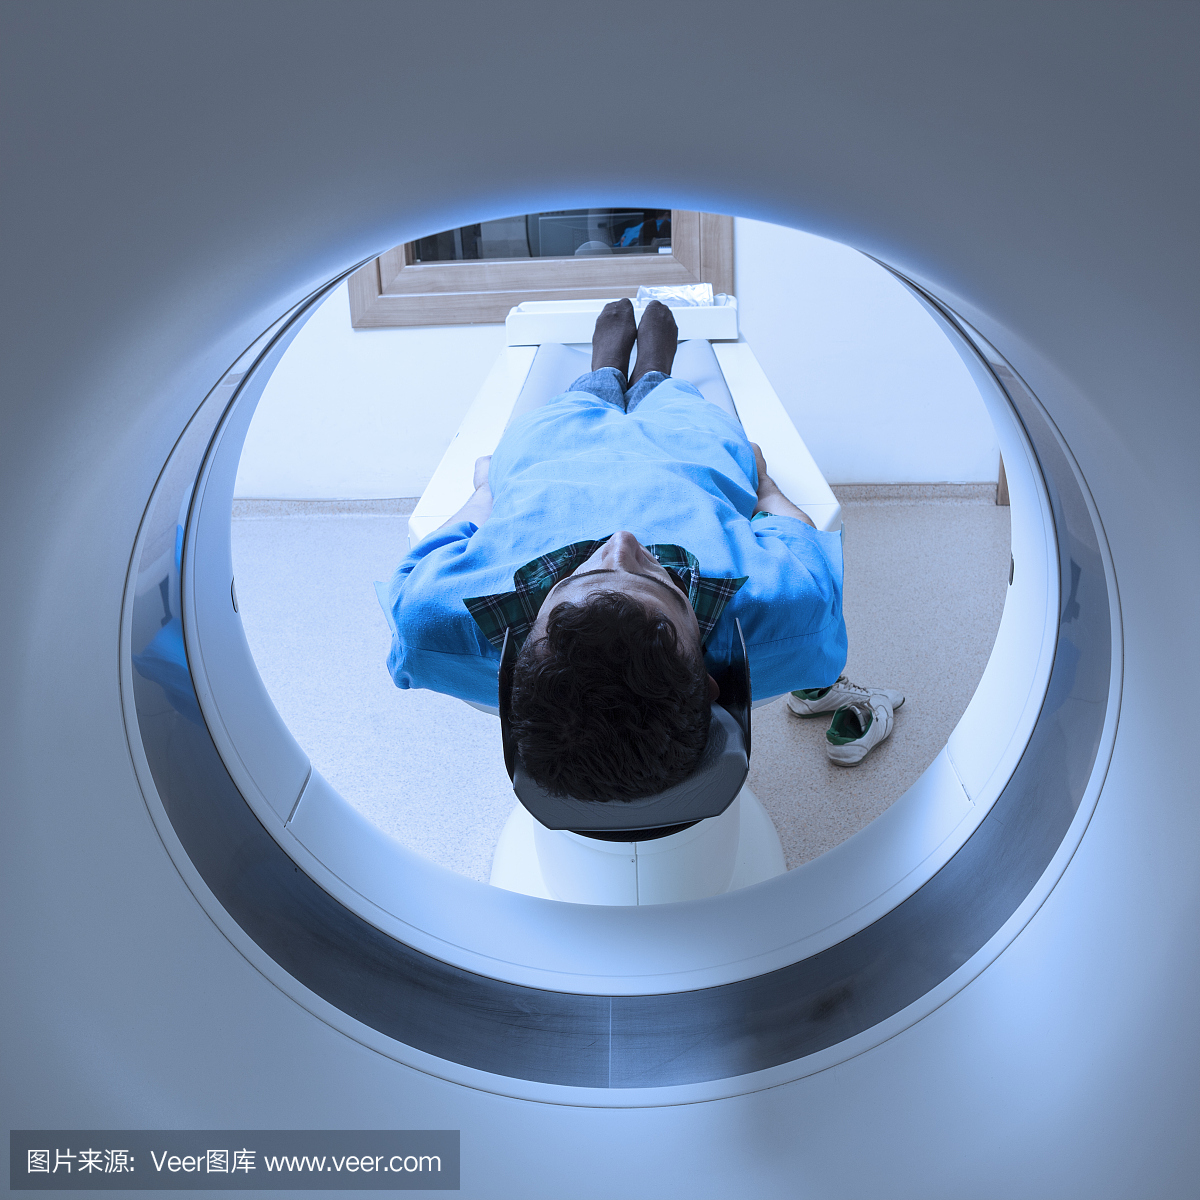 通过现代CT扫描仪进行体格检查的人员